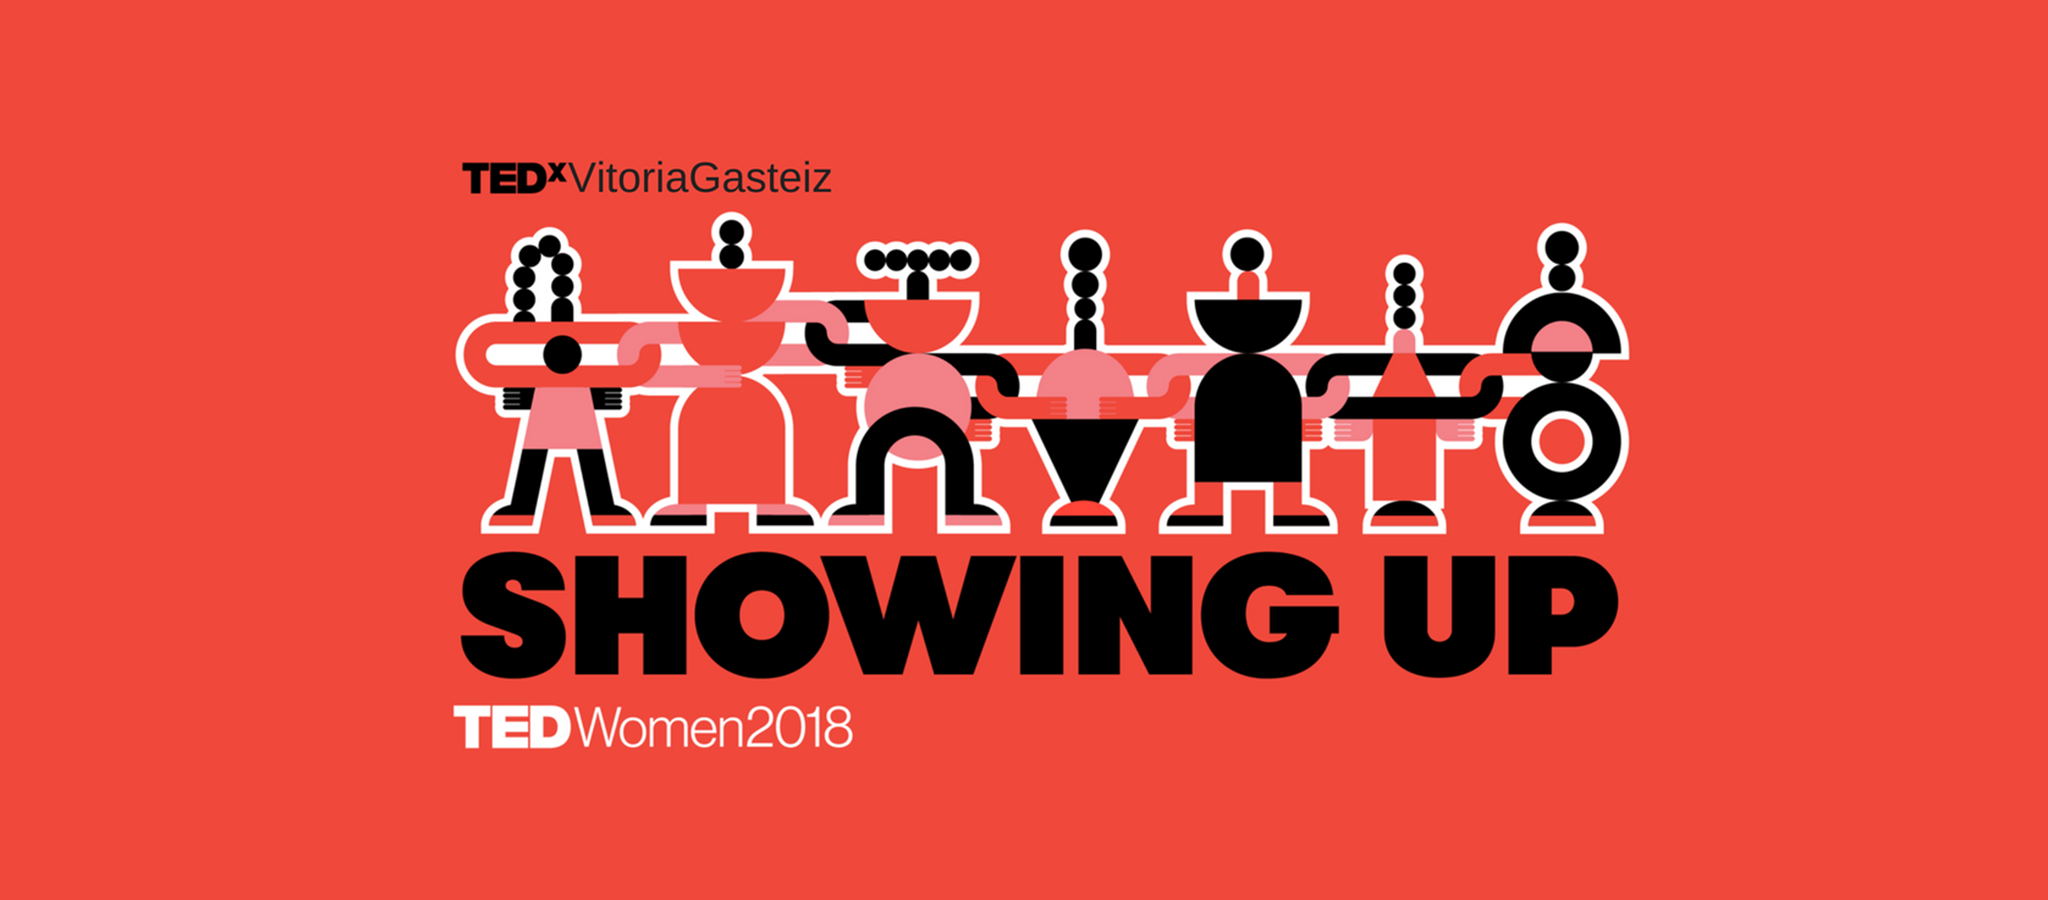 TEDxWomenVitoriaGasteiz